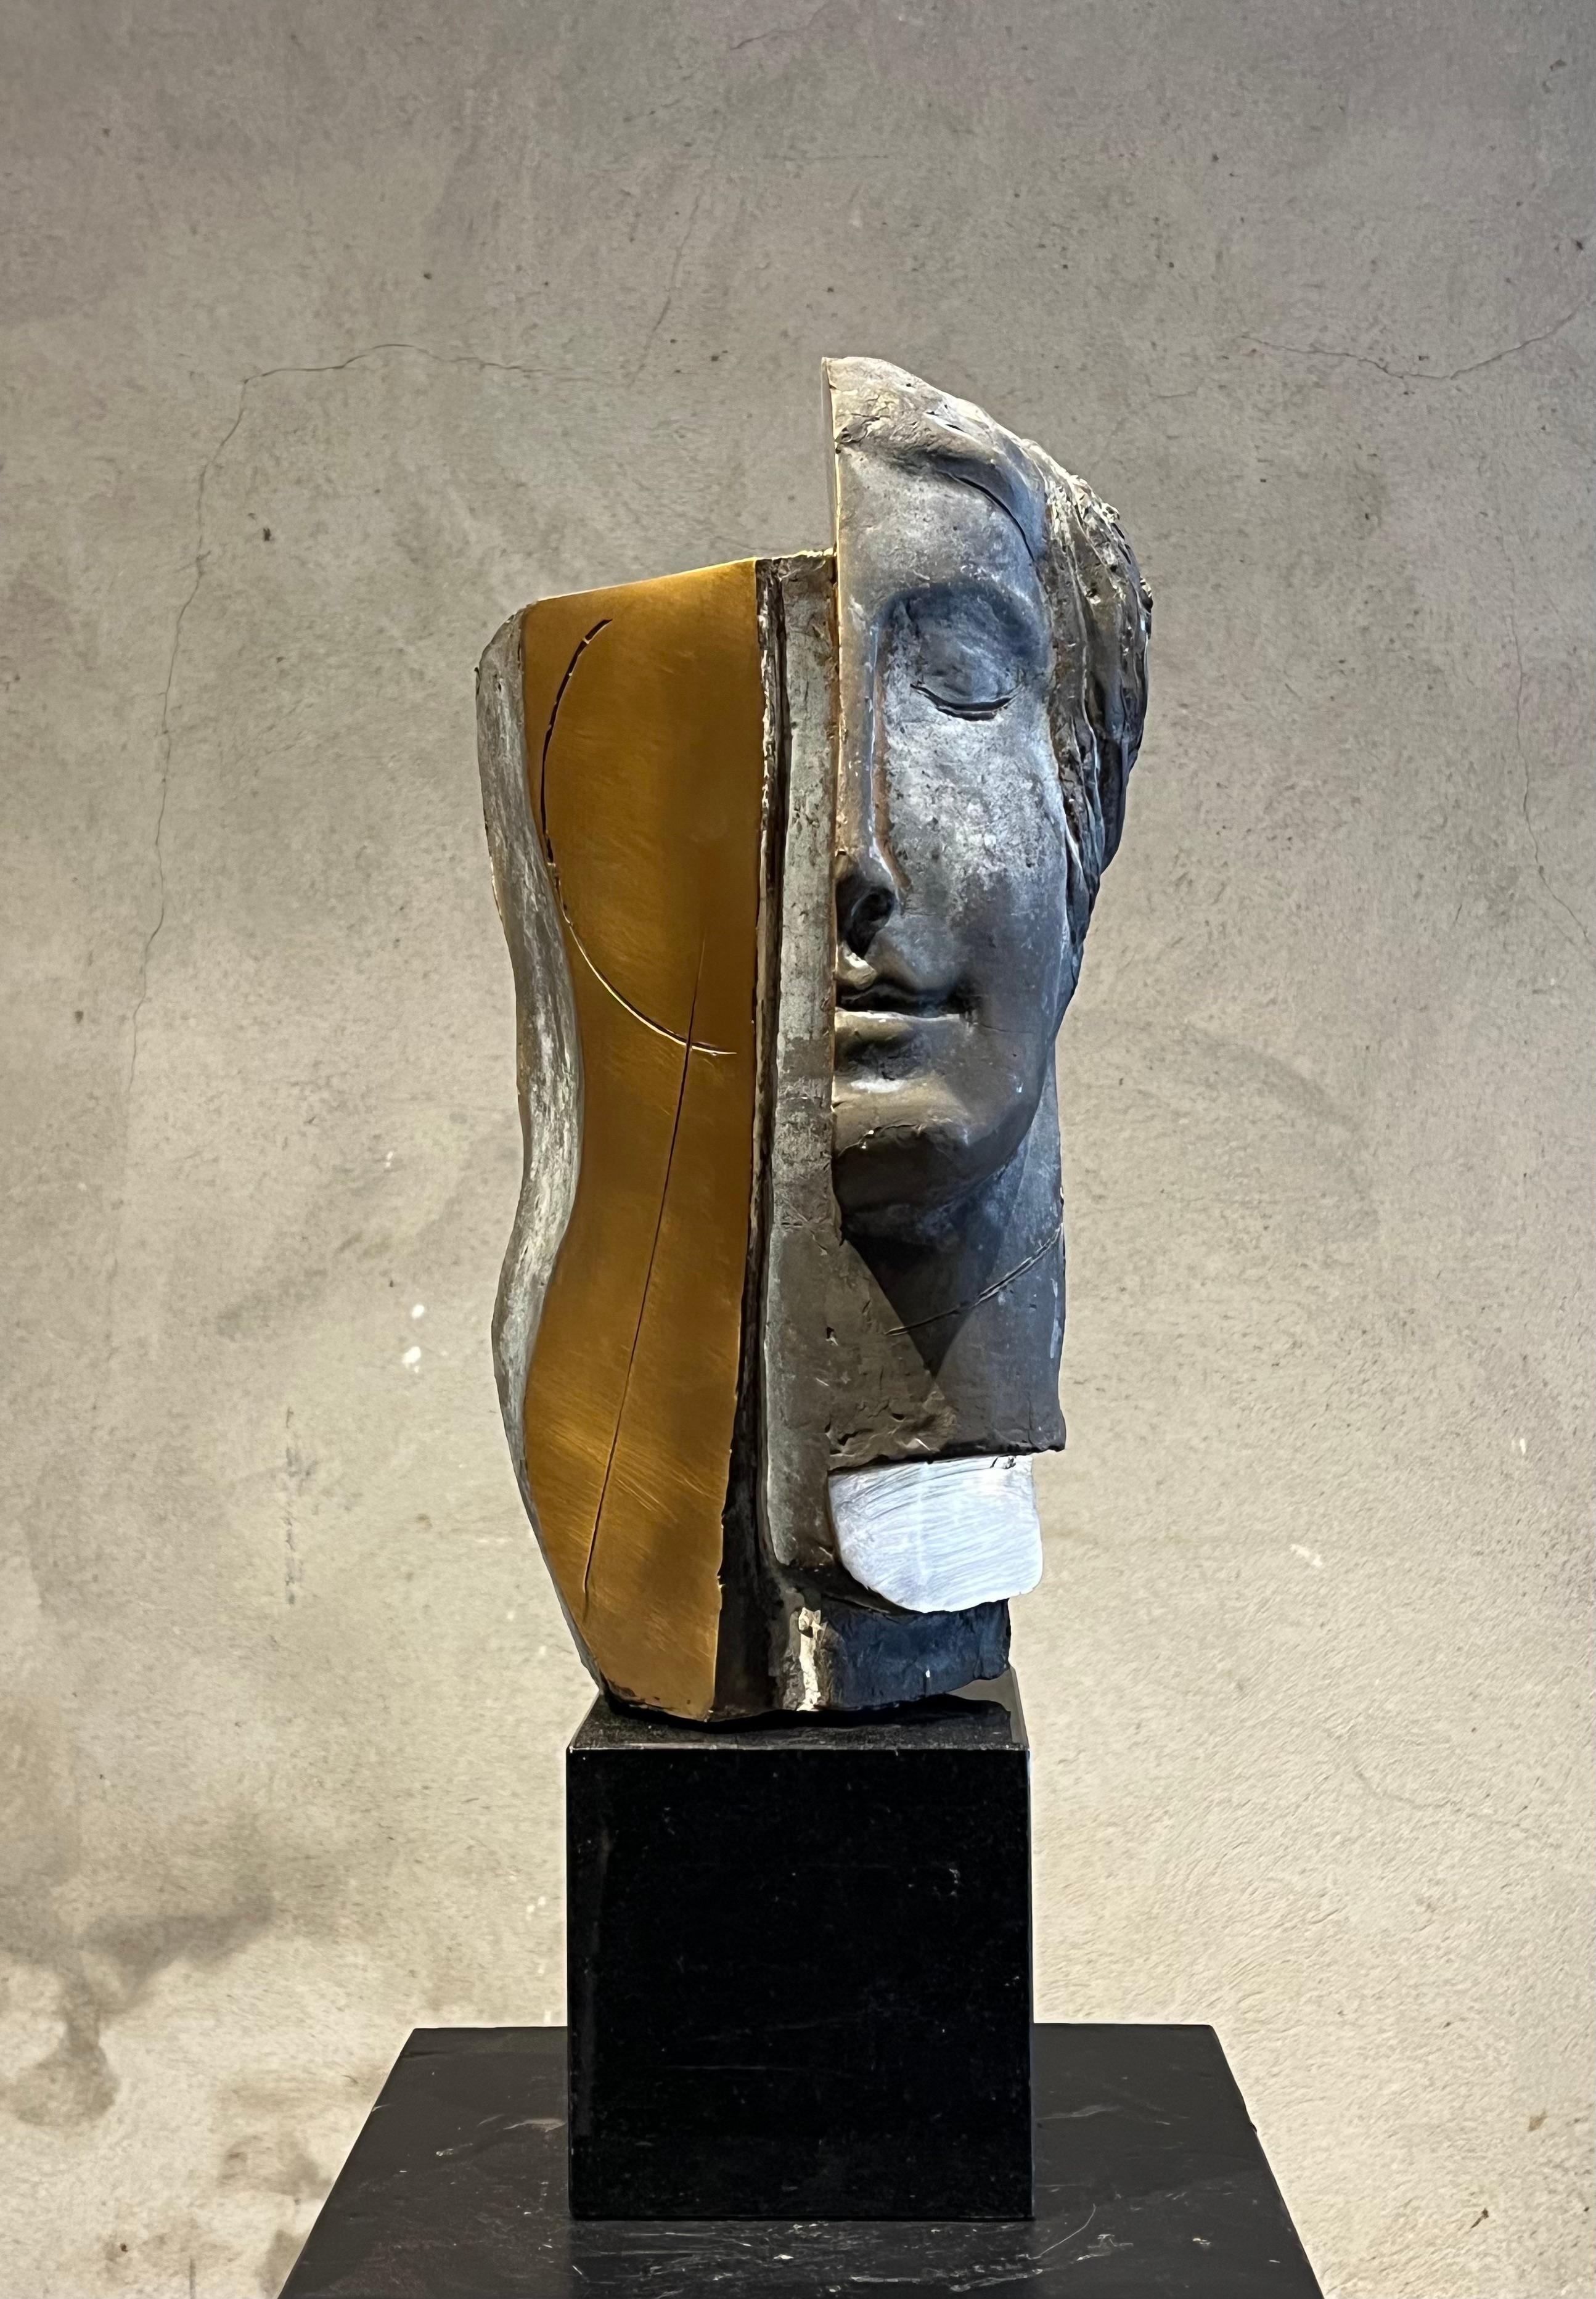 Thomas Junghans Figurative Sculpture – Beginn der Weisheit